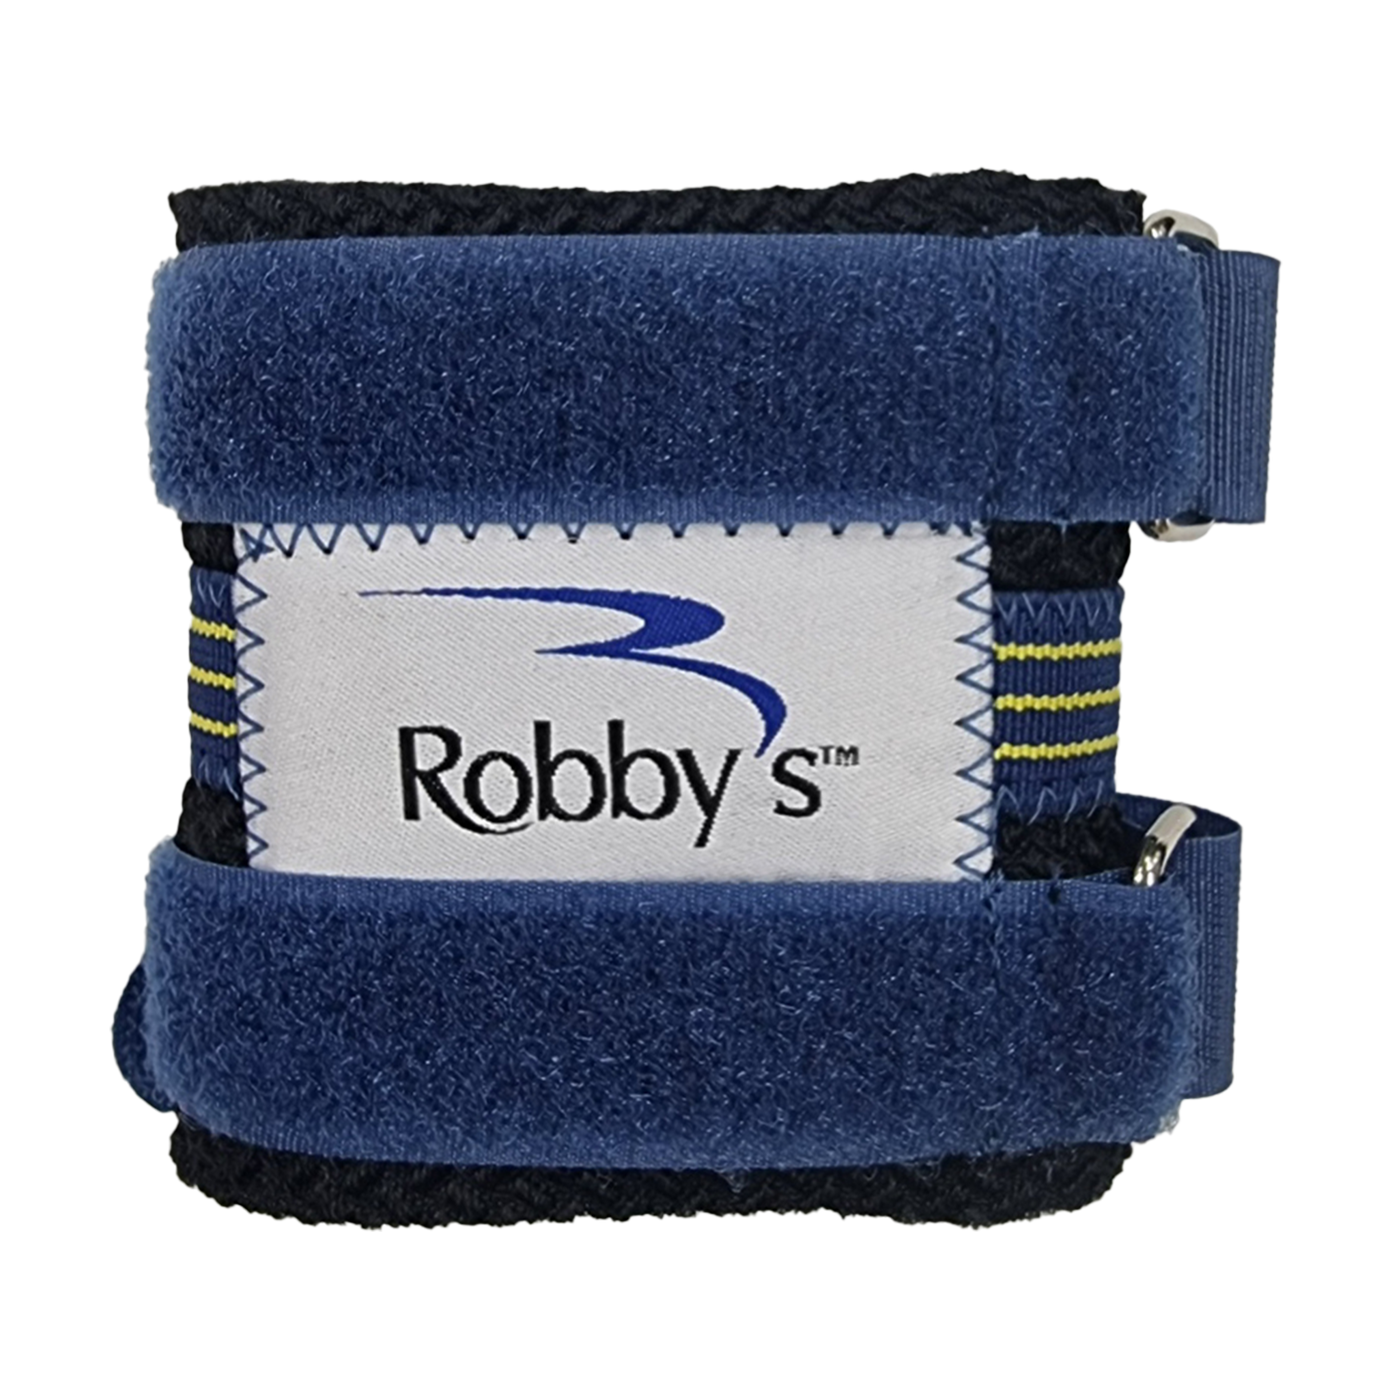 Robby's Wrist Wrap